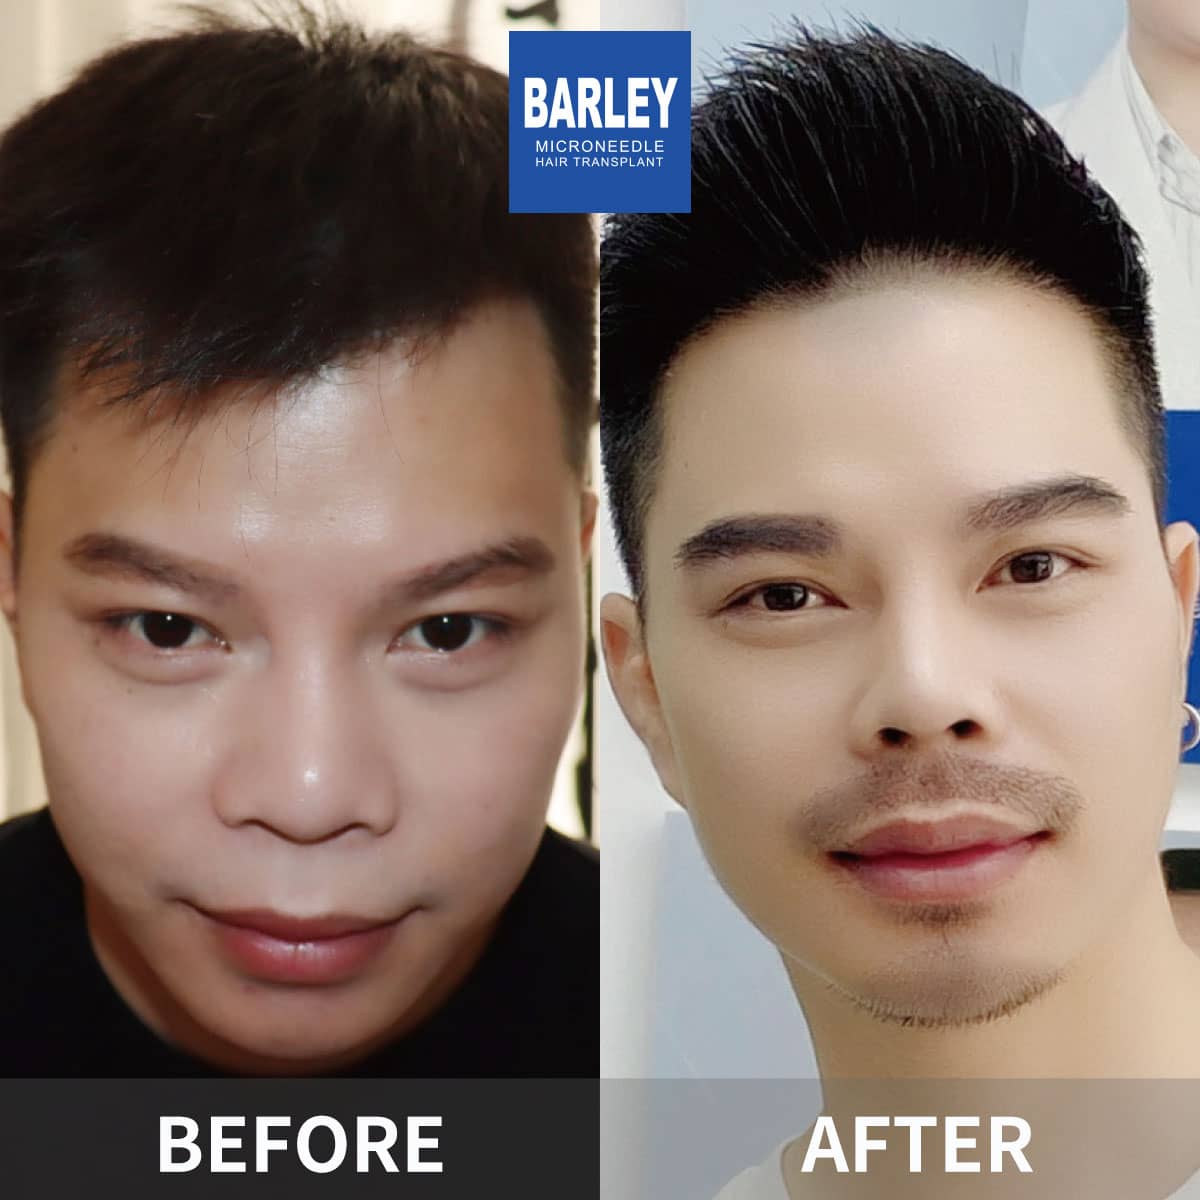 facial hair transplant results